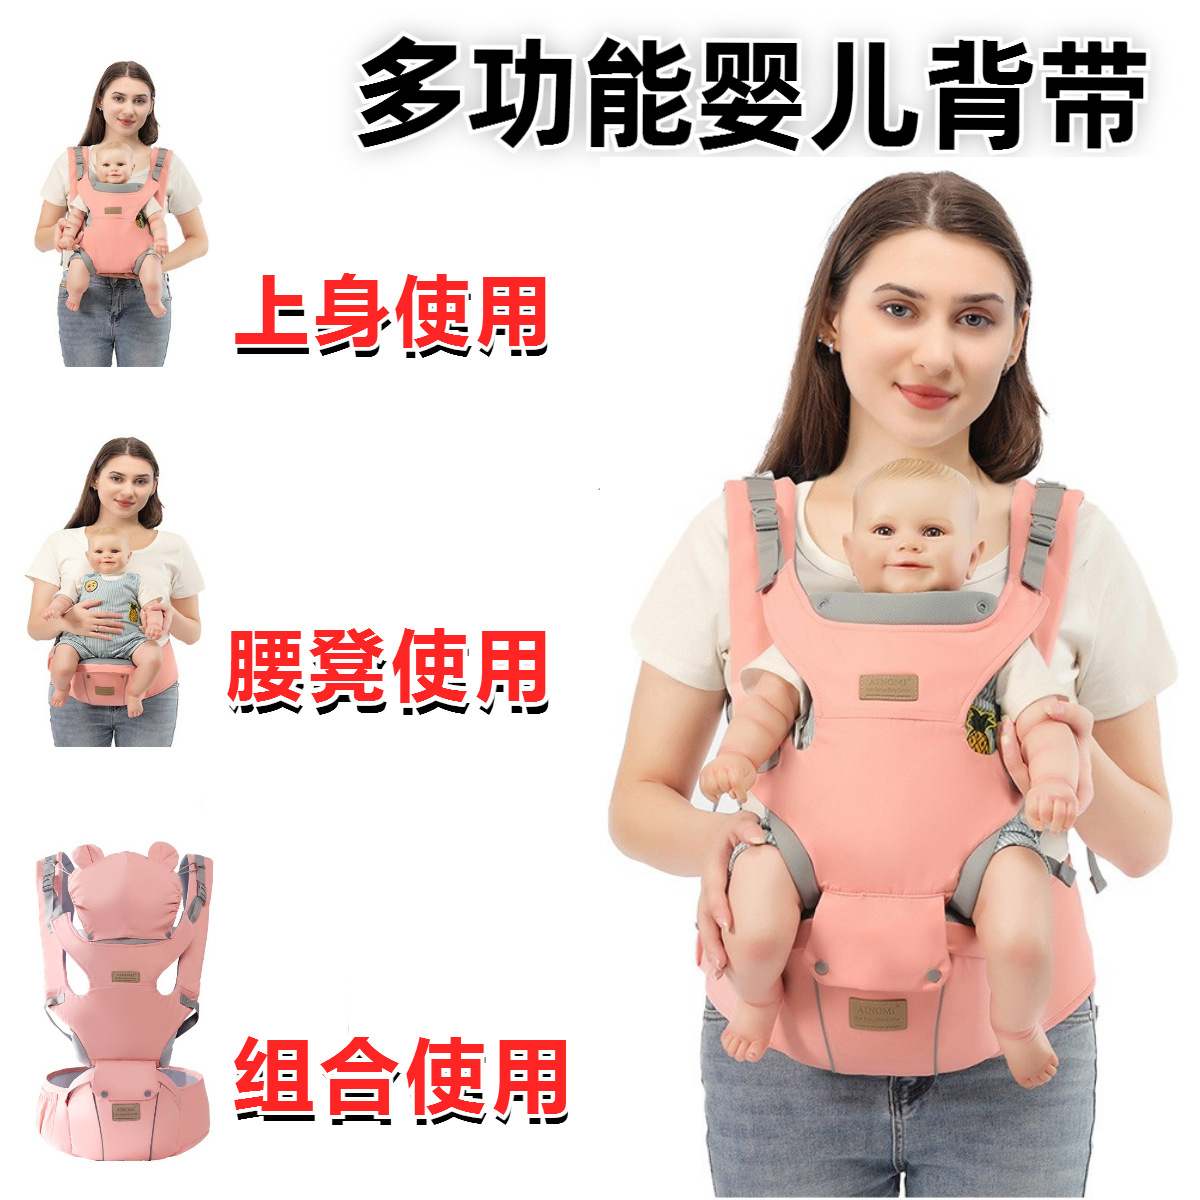 婴儿背带腰凳多功能透气宝宝横抱式腰凳抱娃腰带母婴用品跨境baby